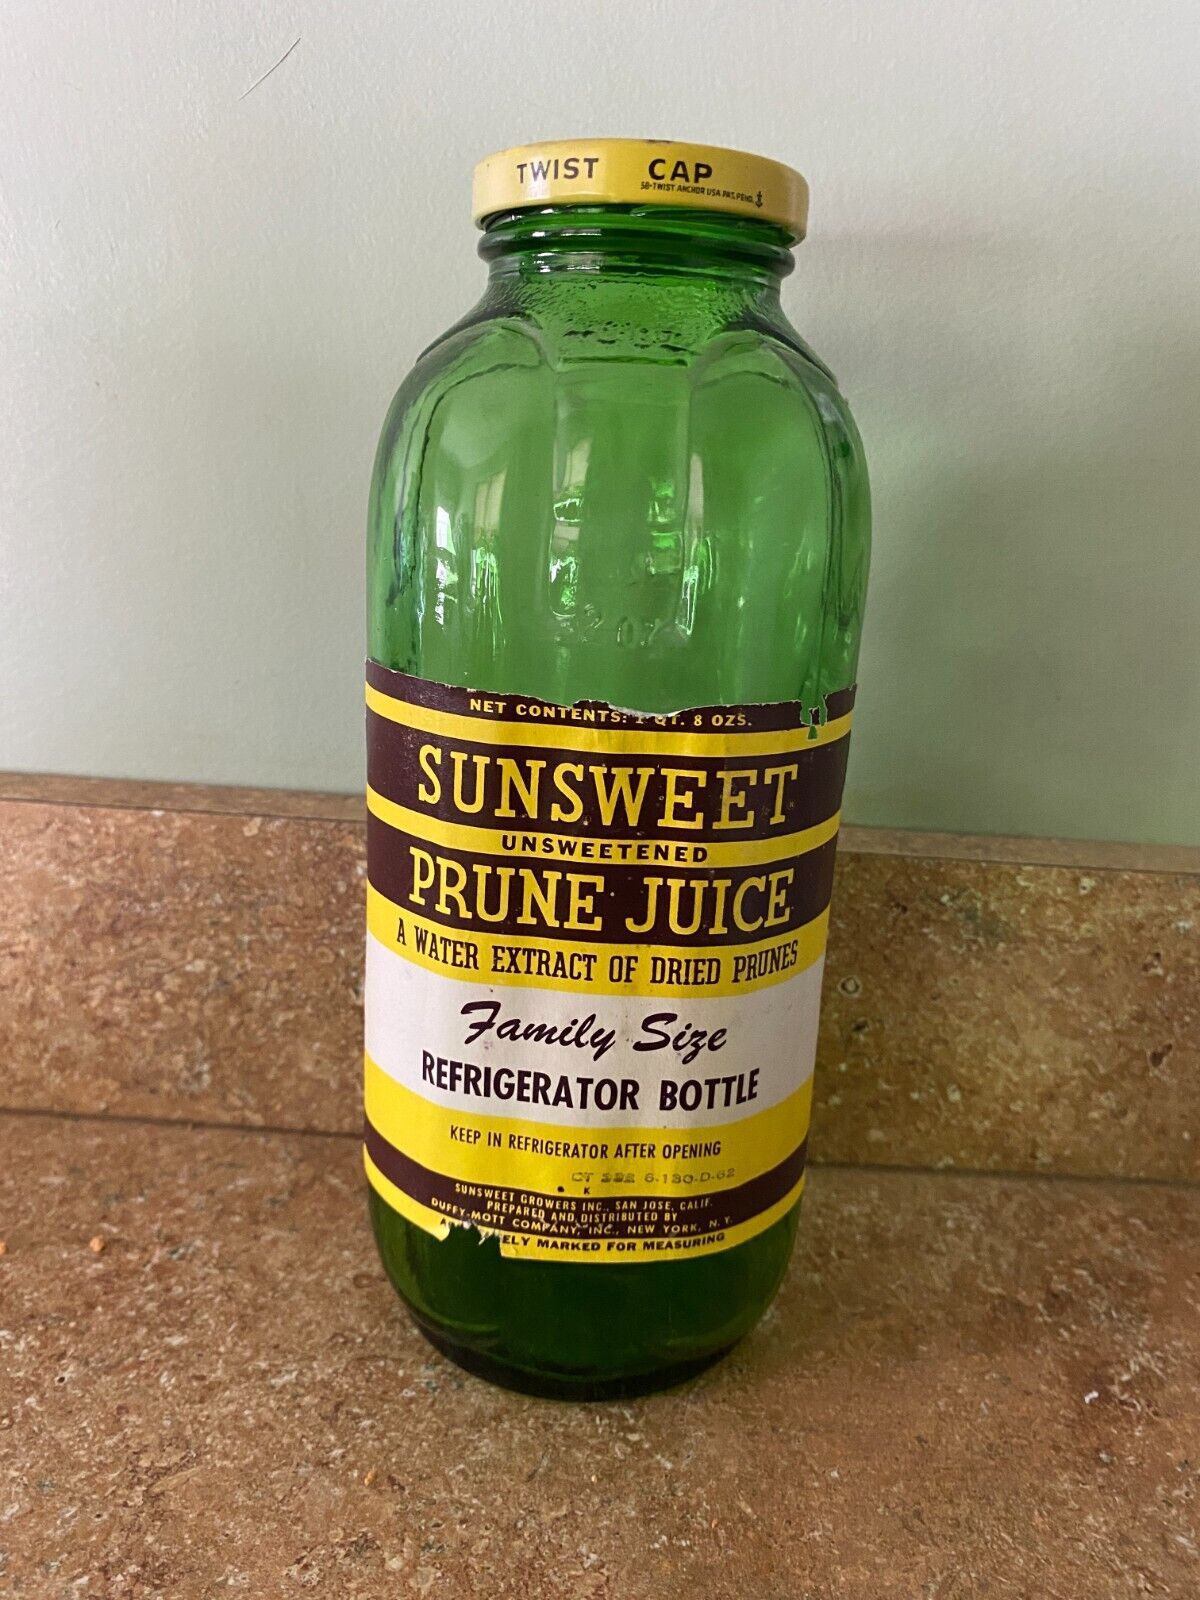 Vintage Sunsweet Prune Juice Green Glass Jar Bottle with Label & Lid Lot B